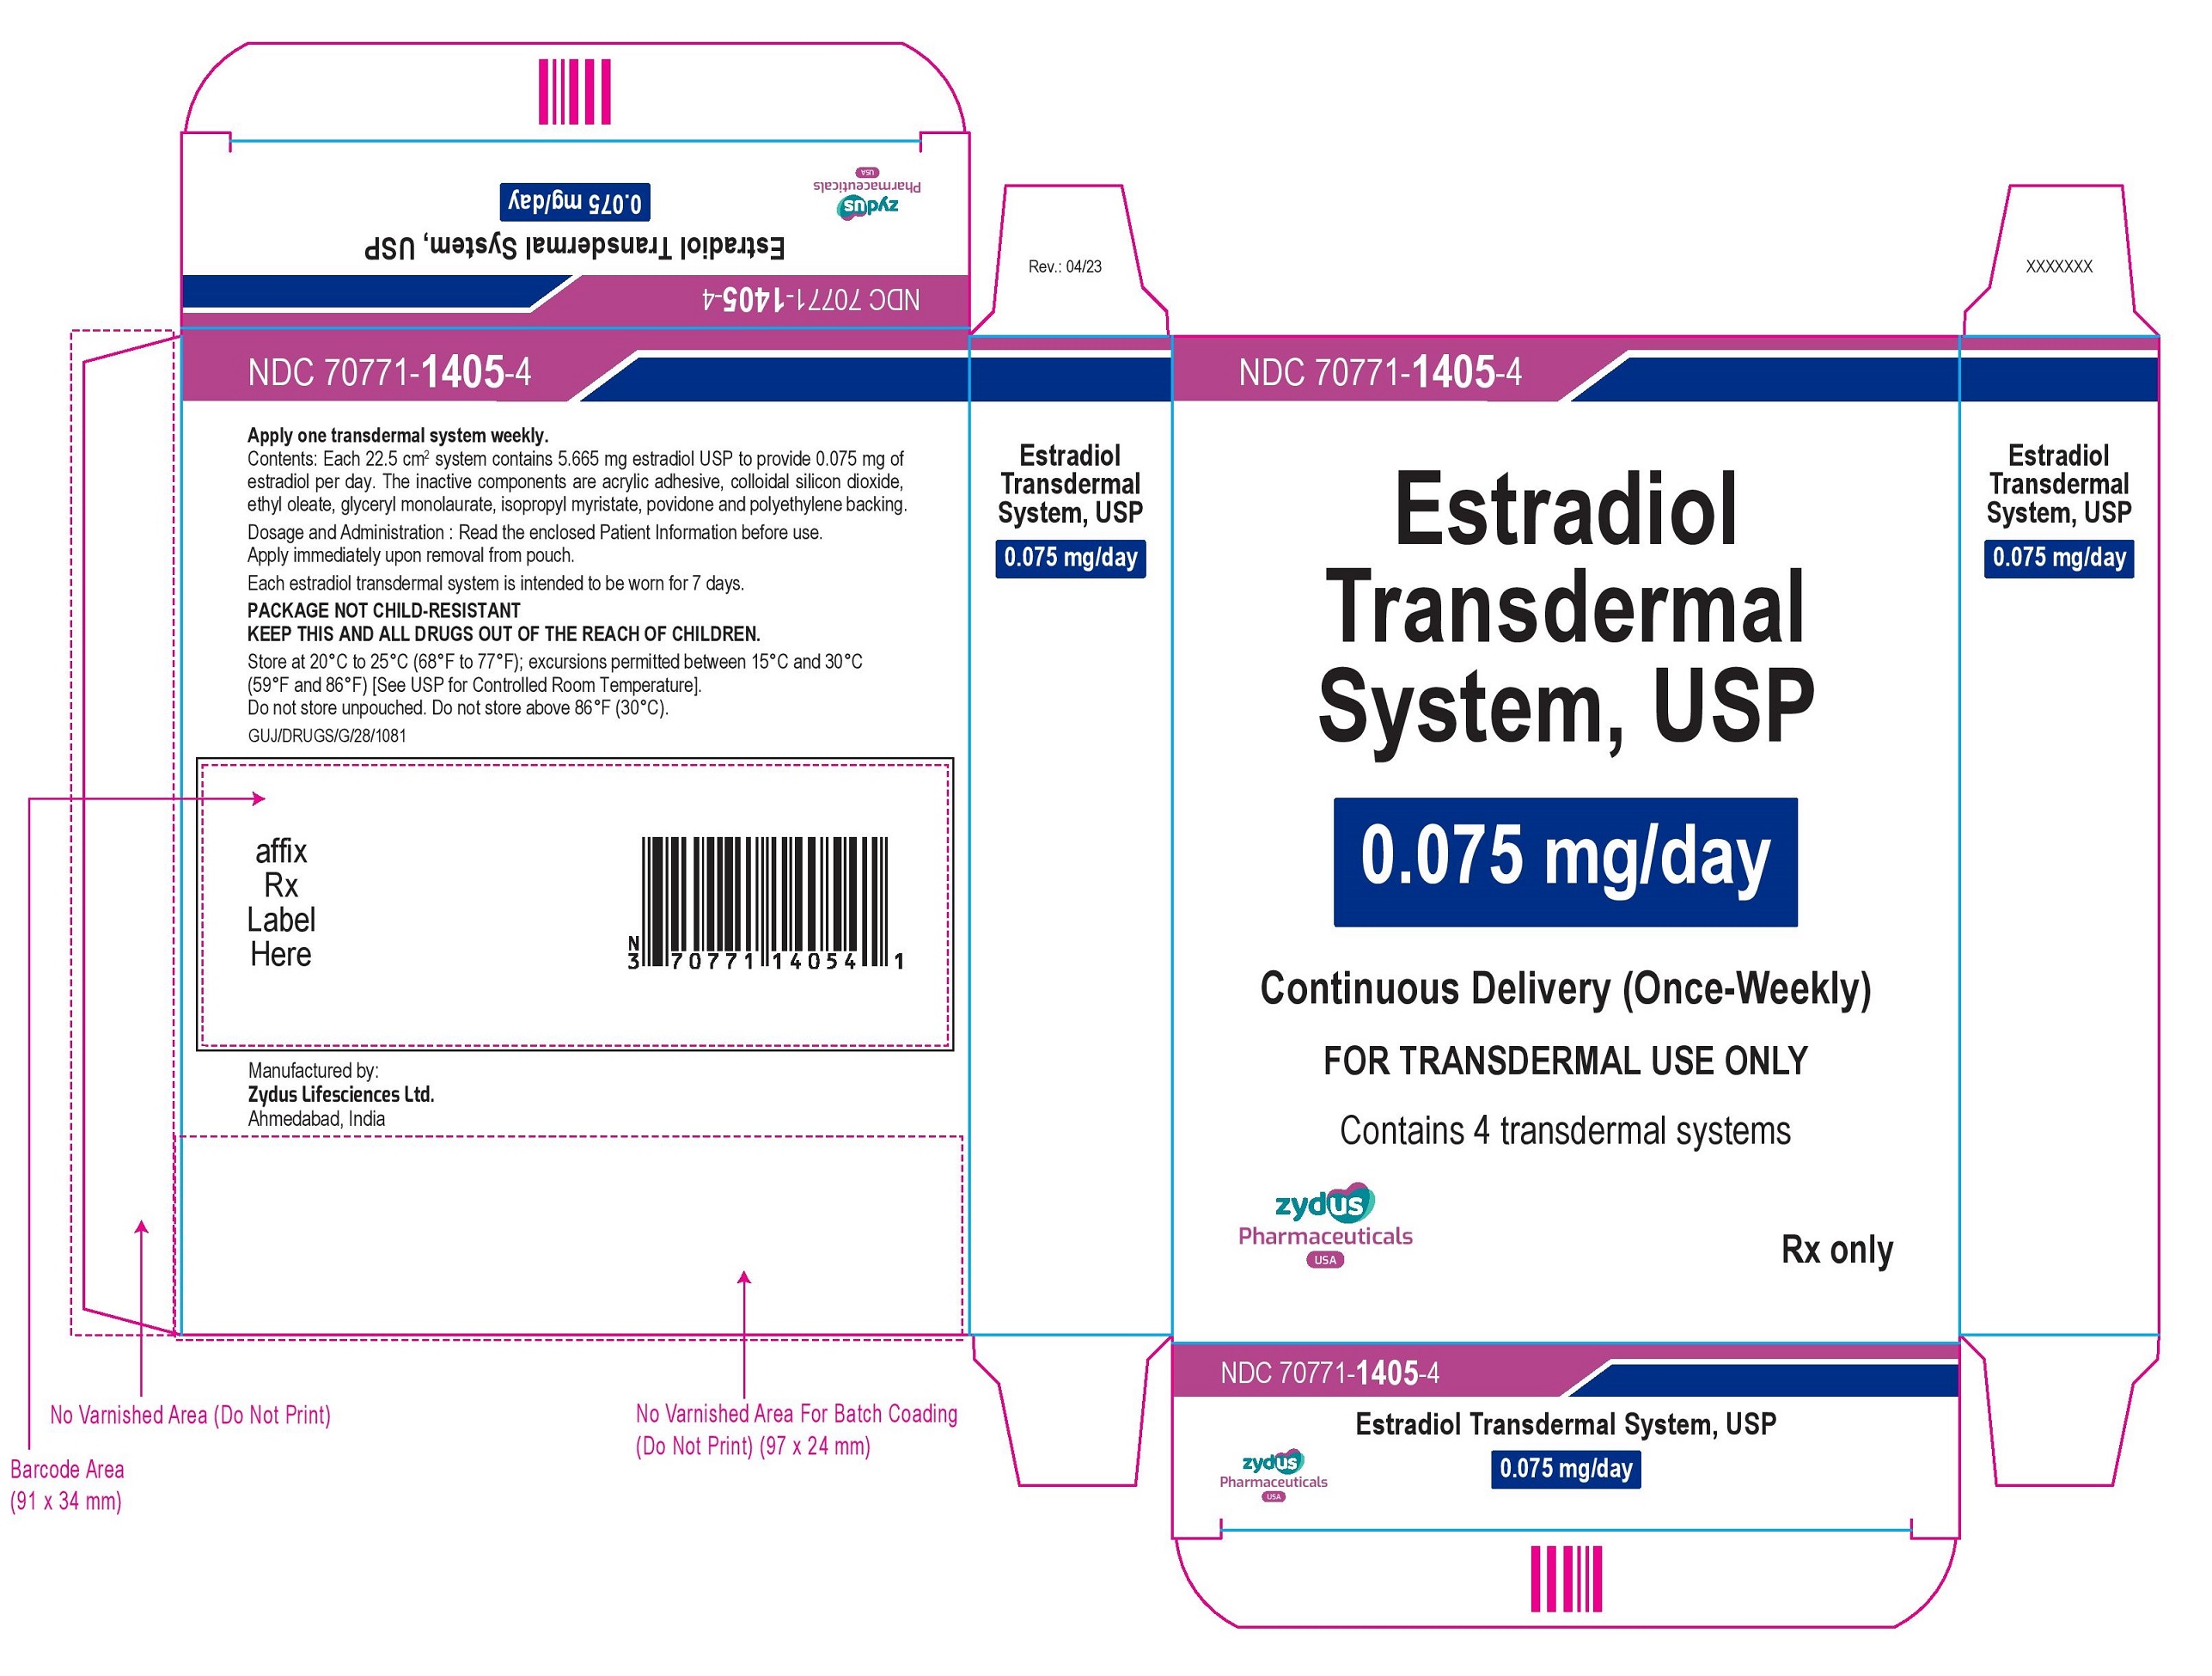 Estradiol Transdermal System USP, 0.075mg per day